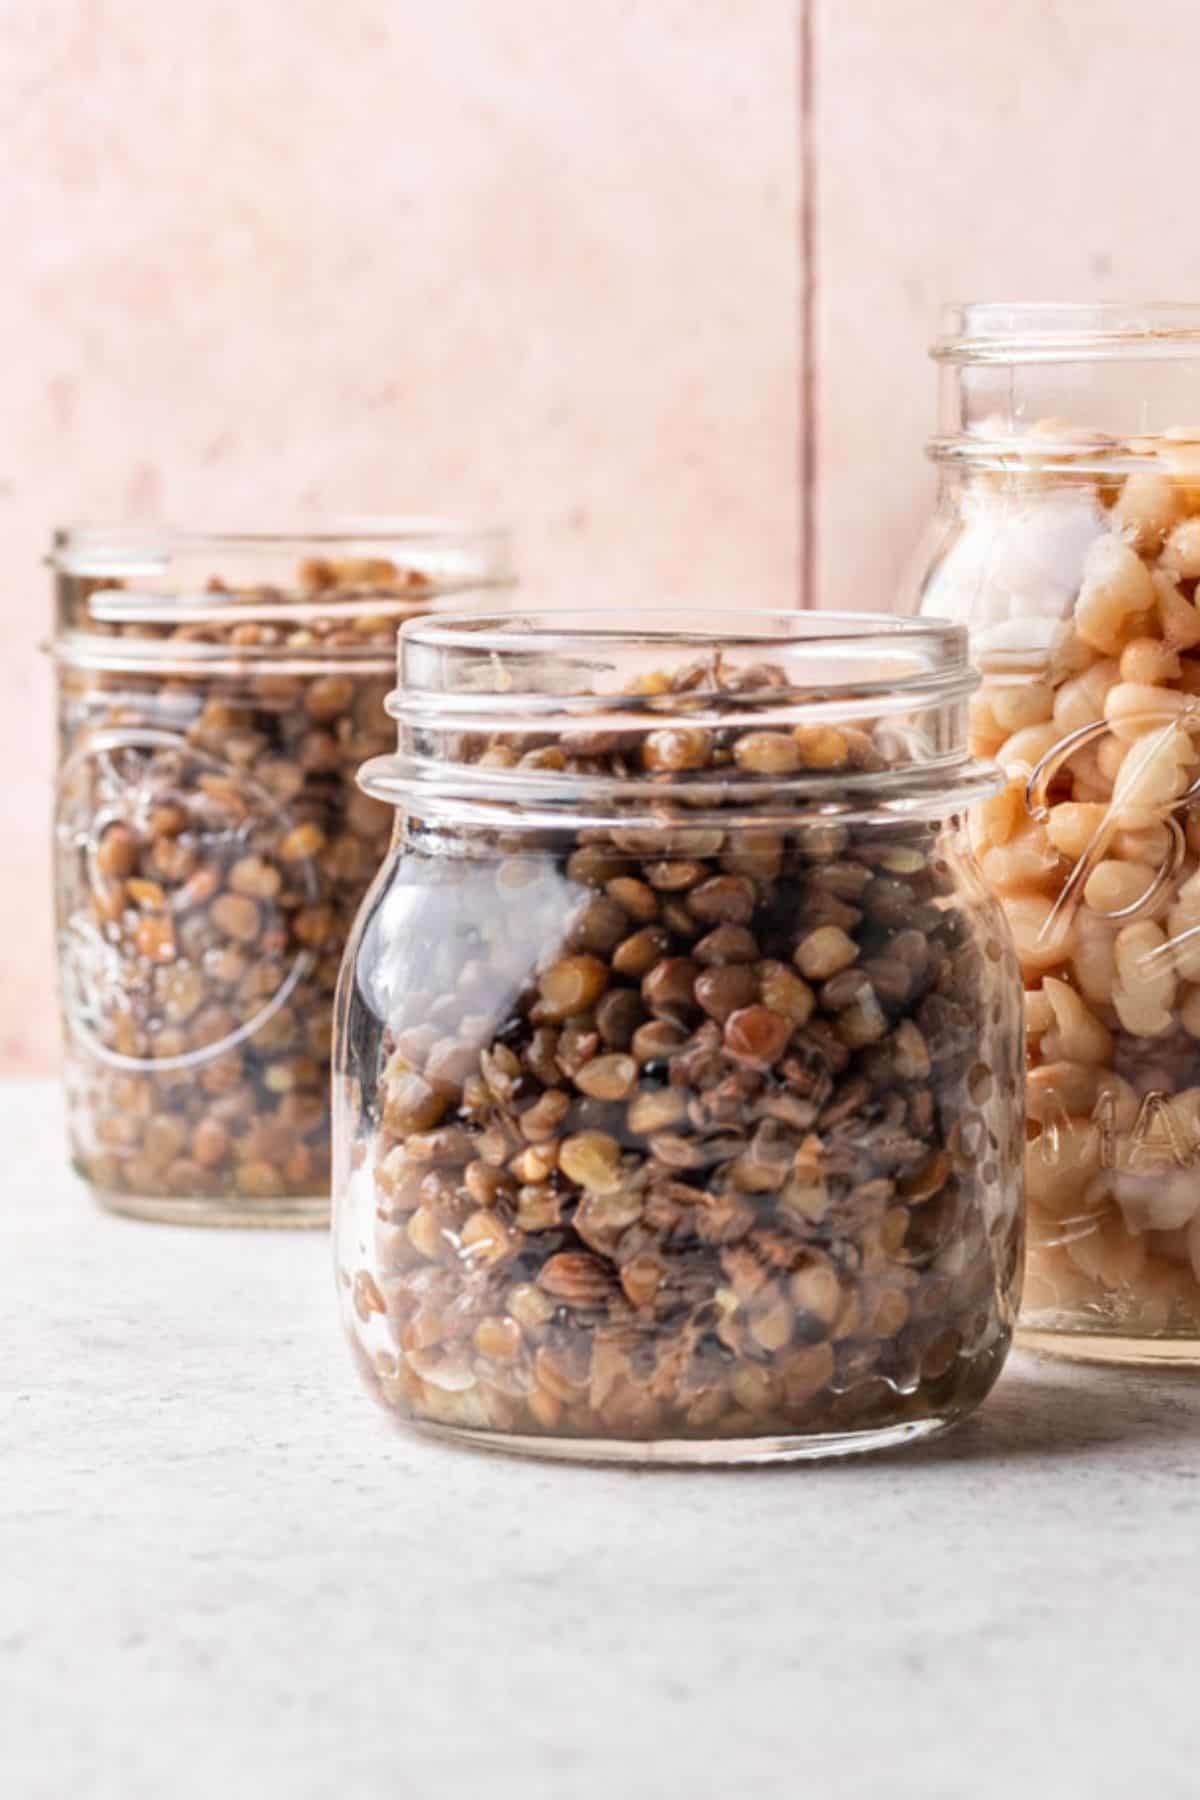 Jar of lentils for storage.